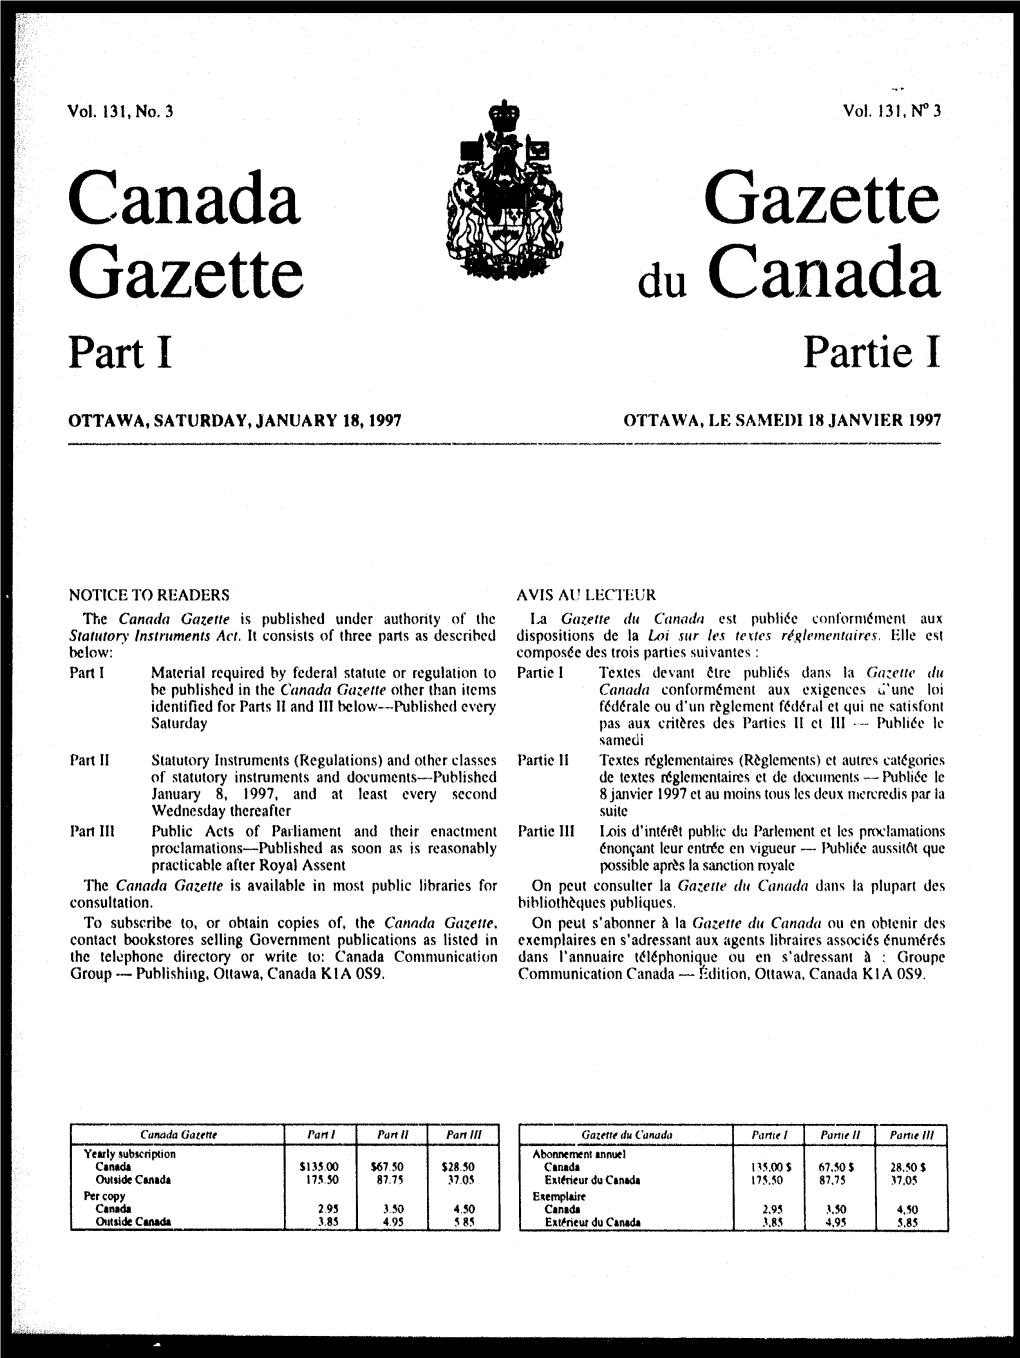 Canada Gazette Du Canada